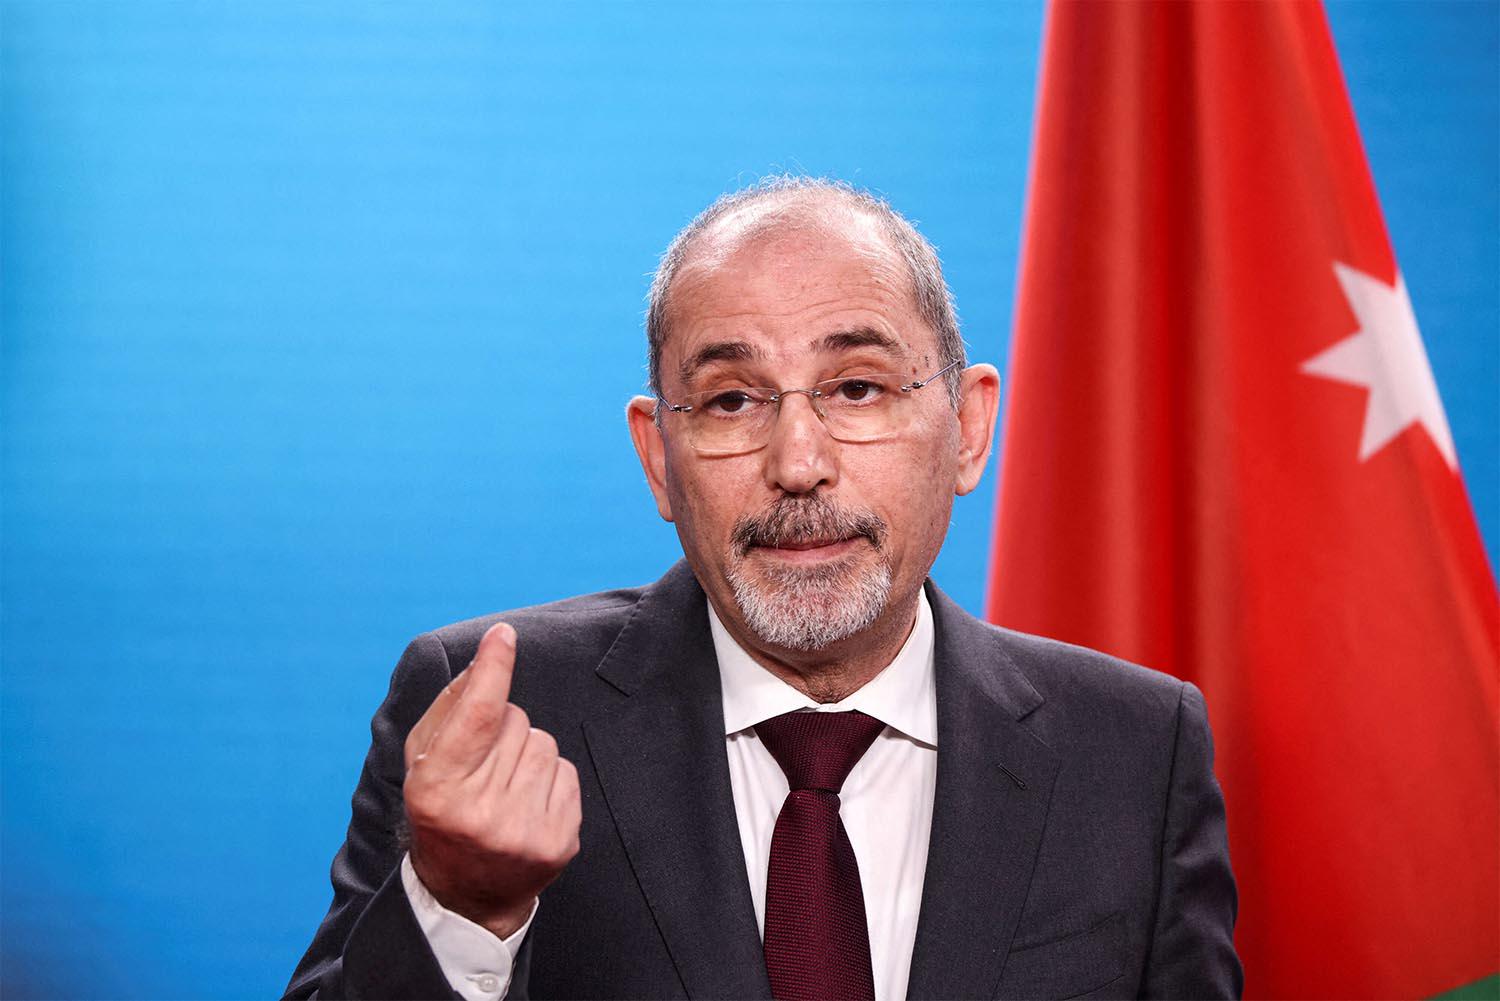 Jordan's Foreign Minister Ayman Safadi 